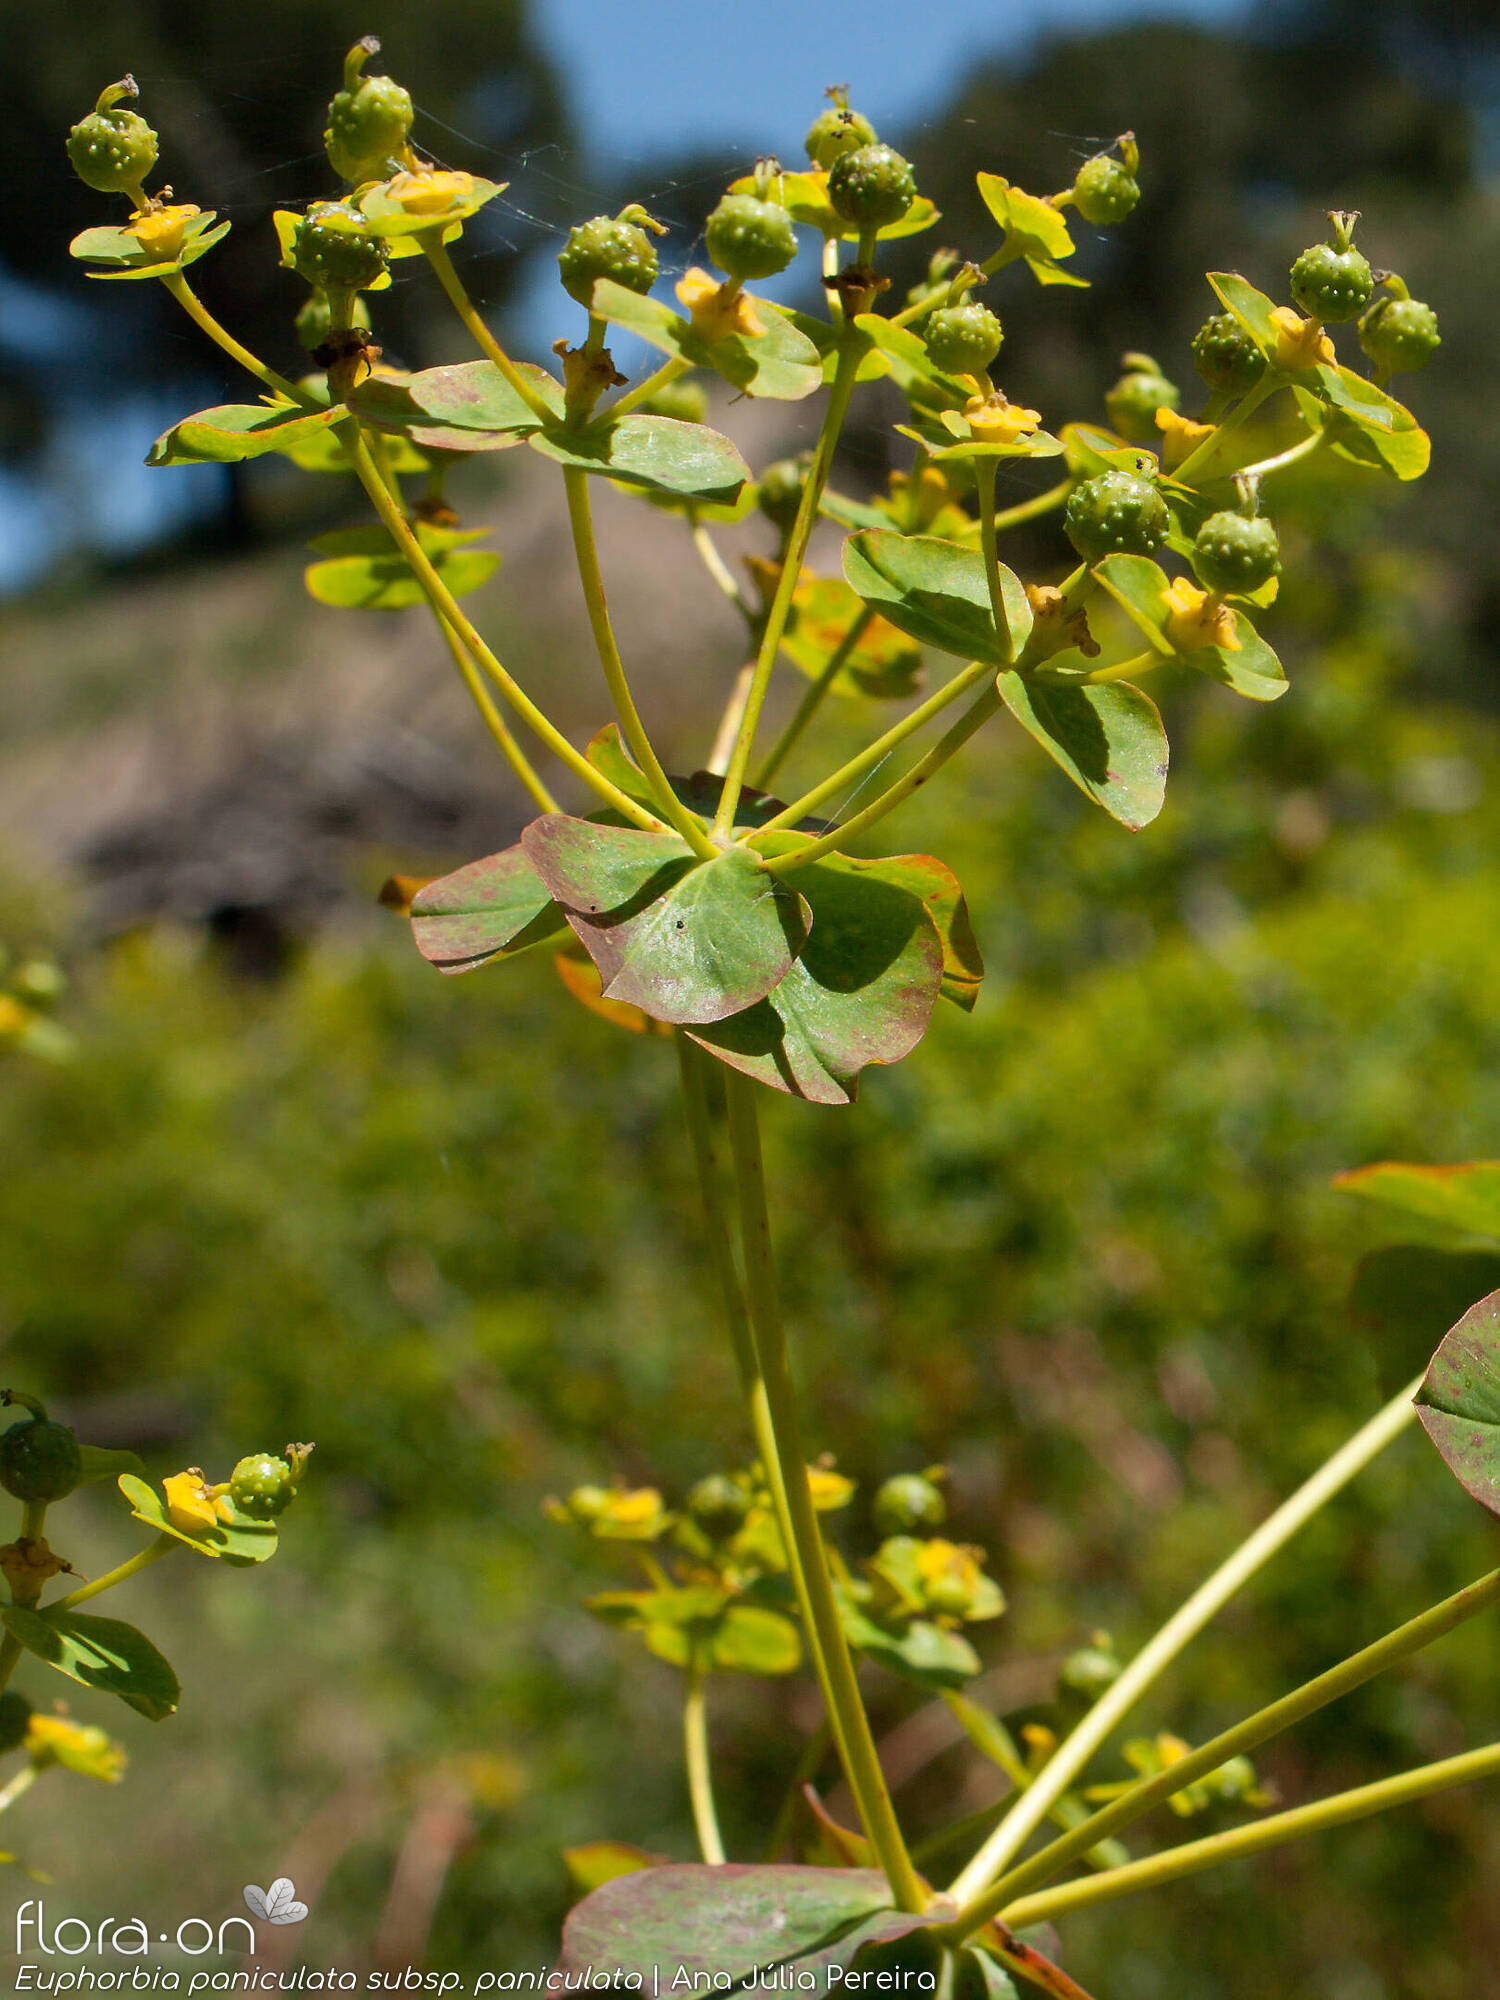 Euphorbia paniculata - Flor (geral) | Ana Júlia Pereira; CC BY-NC 4.0